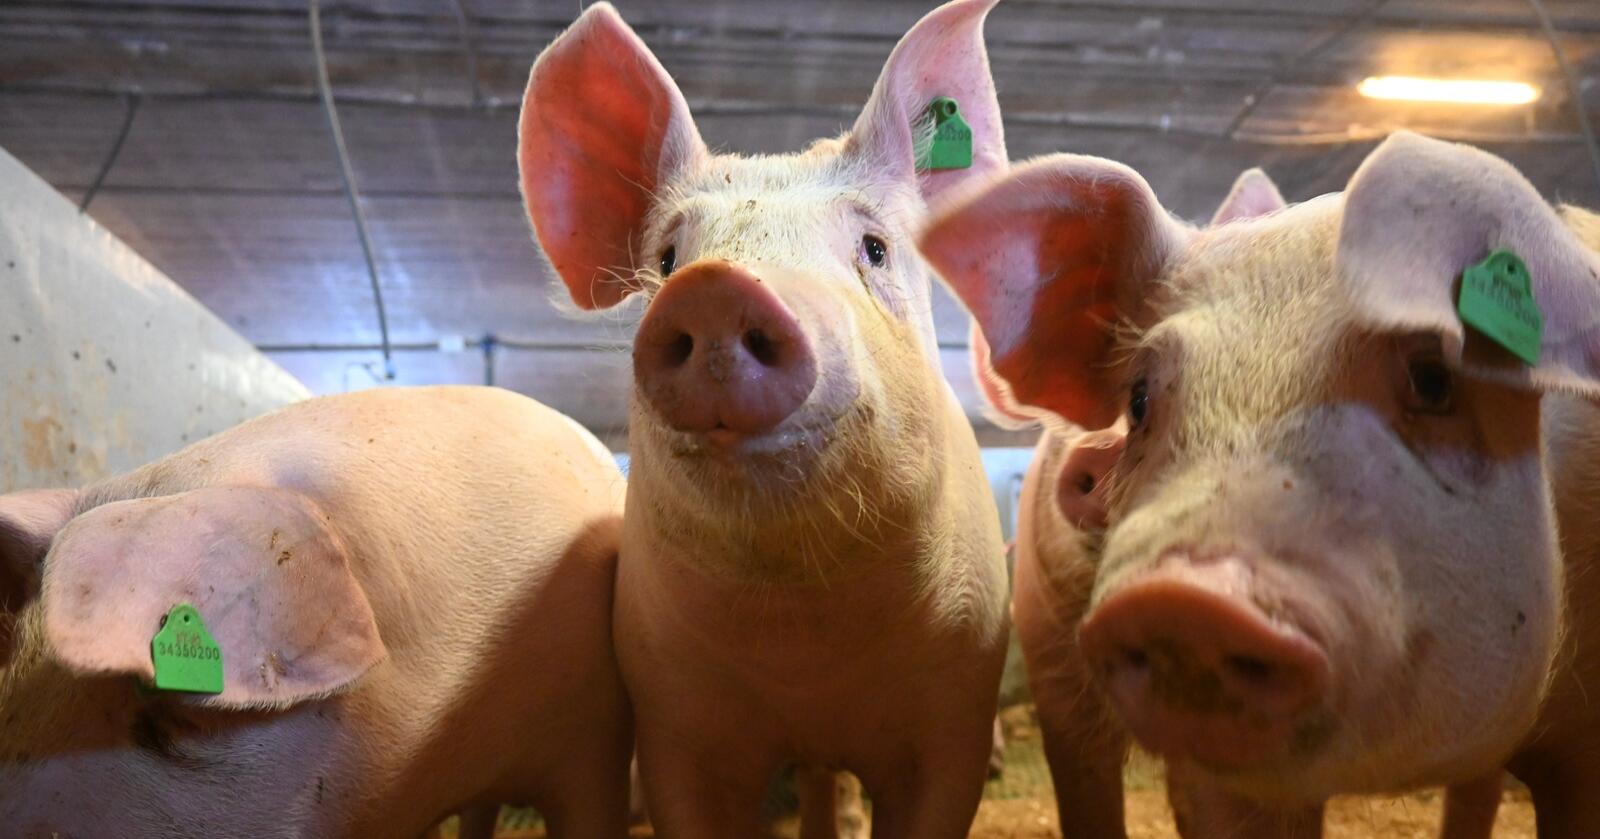 Fra målpris til volum: I årets tilbud foreslår staten å overføre svinekjøtt fra målprismodellen til volummodellen. Endringen vil ha virkning fra 1. juli i år. (Foto: Marit Glærum)